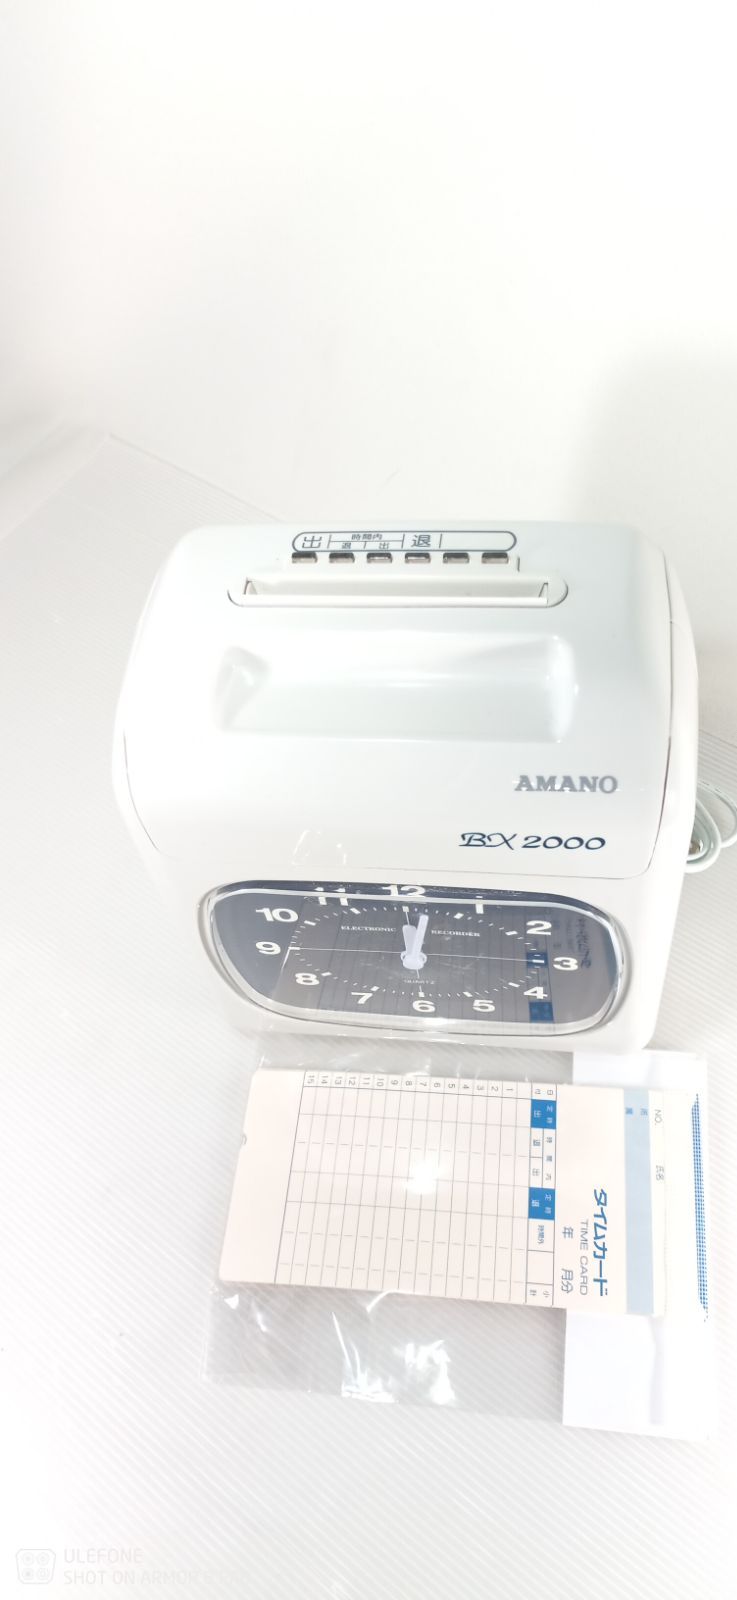 AMANO 電子 タイムレコーダー BX2000 メルカリShops